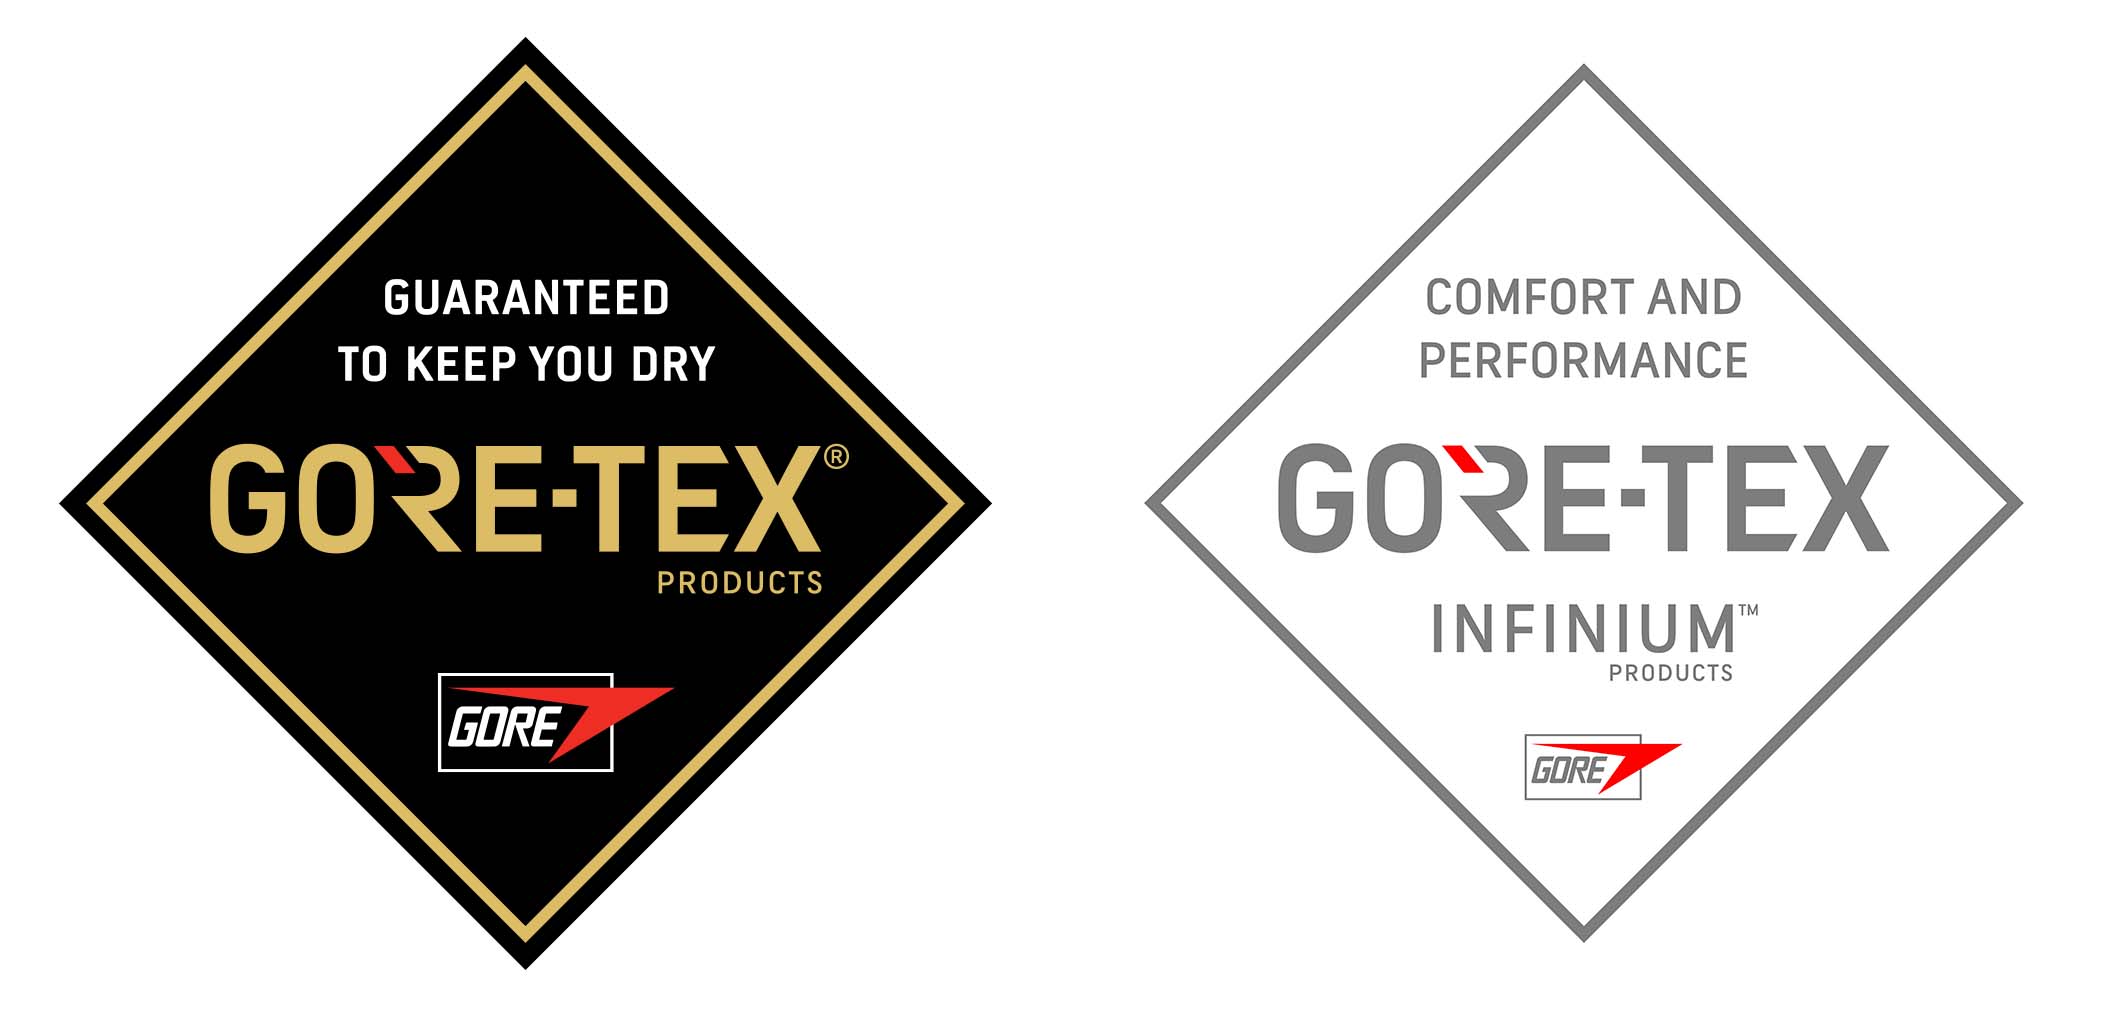 Logos de GORE-TEX® y GORE-TEX INFINIUM™